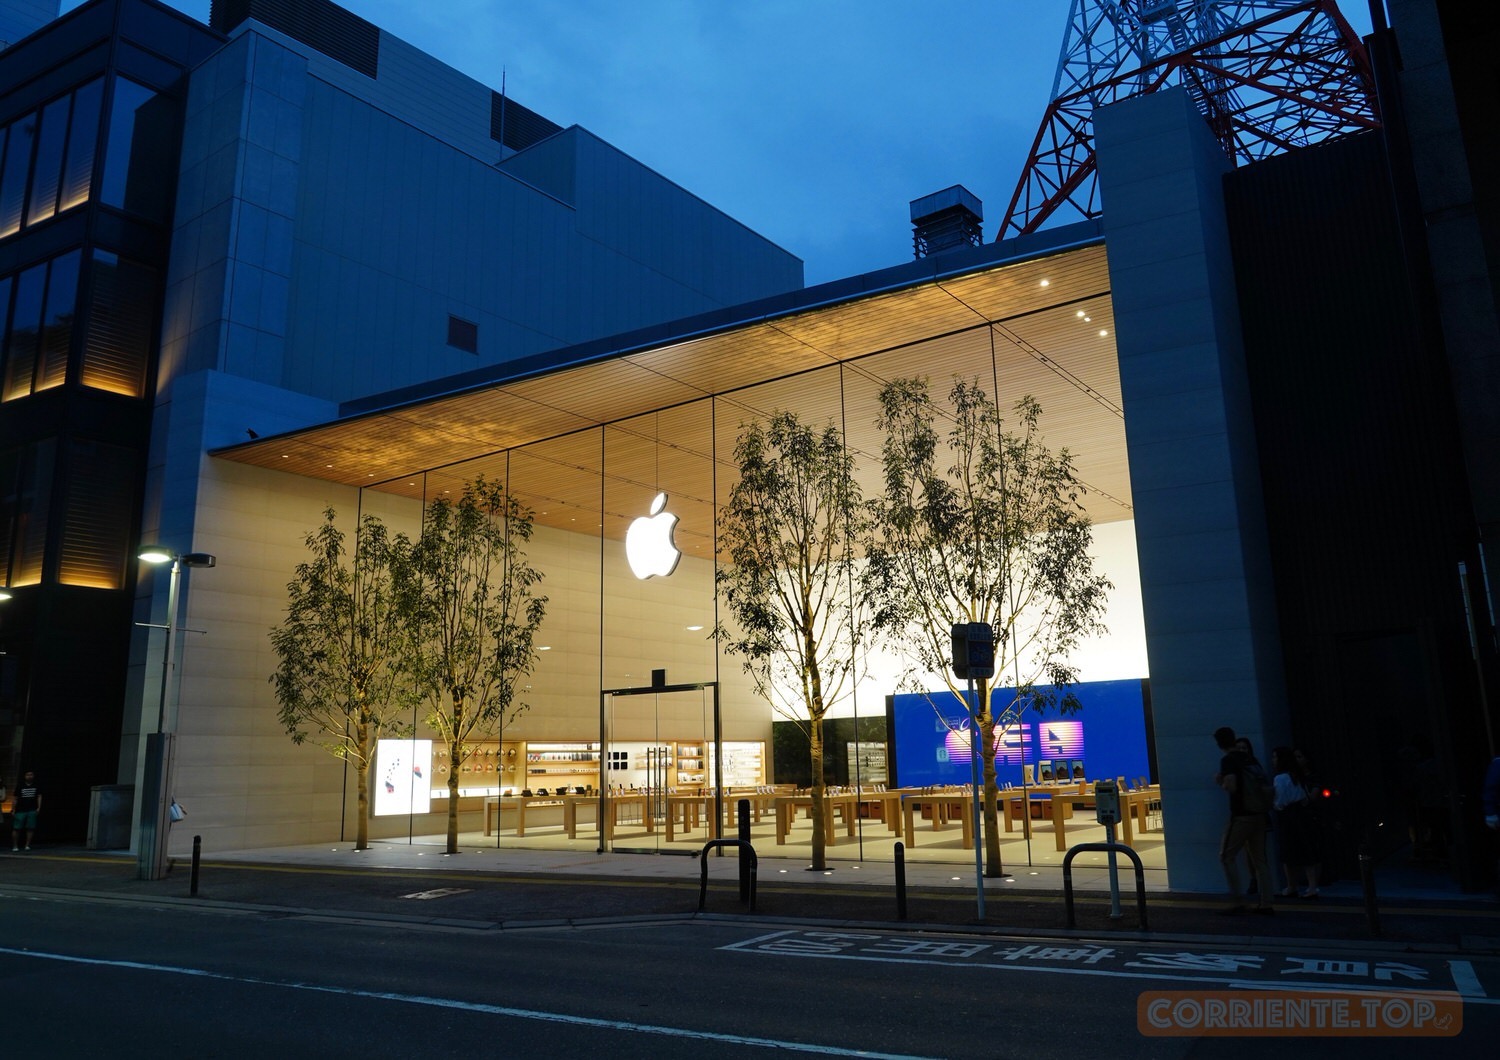 フォトレポート Apple 福岡 移転リニューアル ワンフロアの広々とした店内と竹林が特徴 Corriente Top